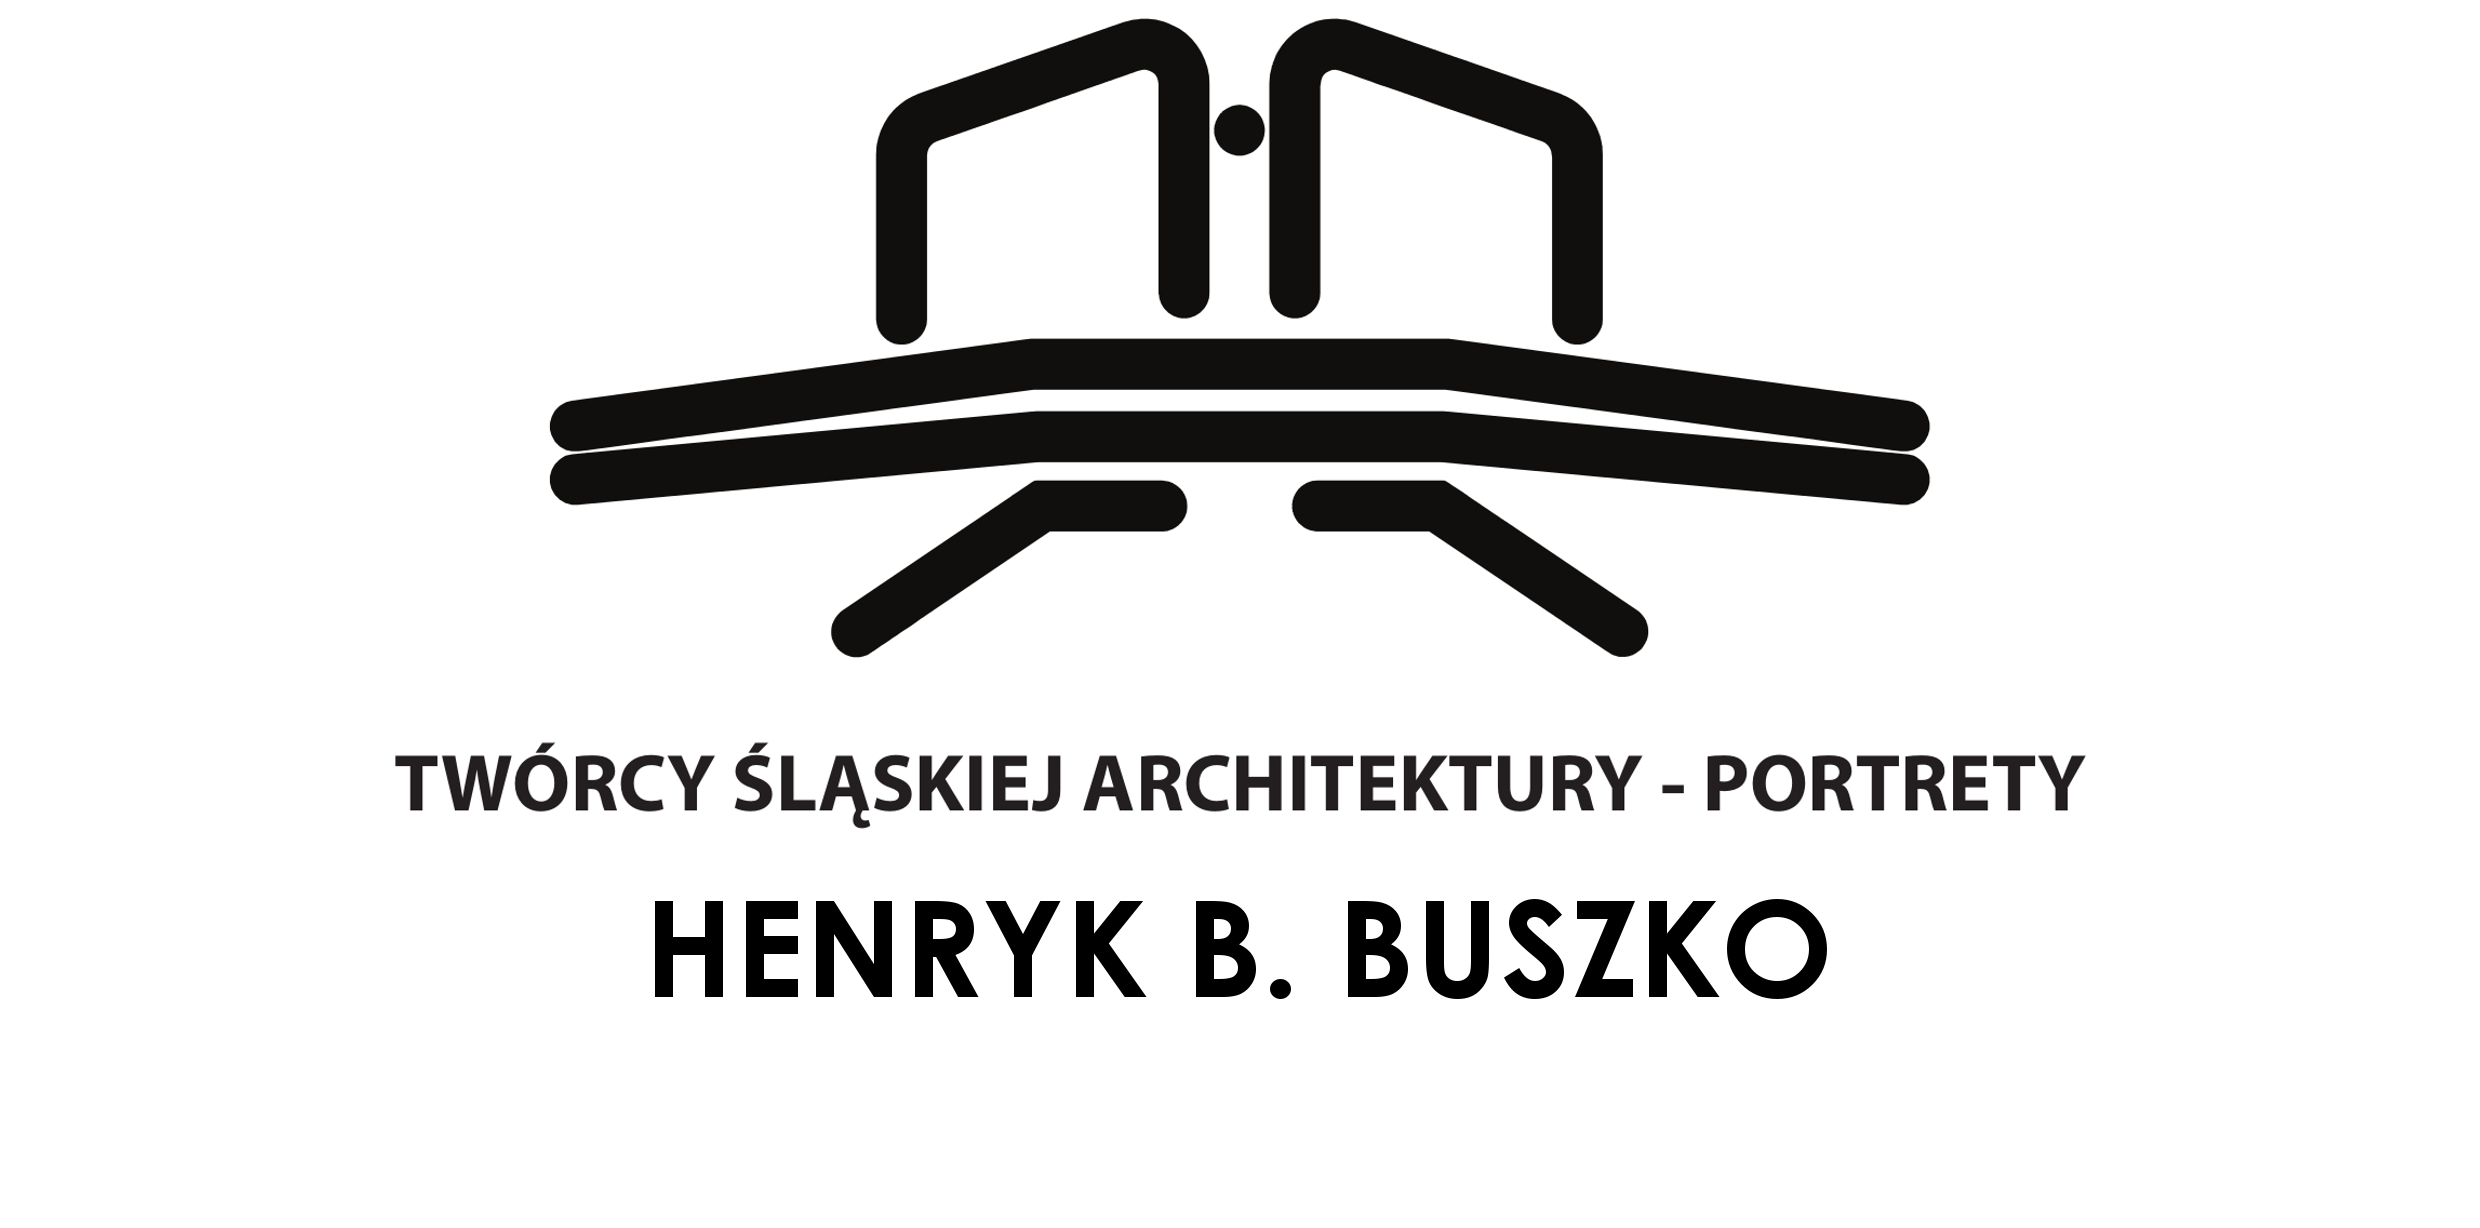 TWÓRCY ŚLĄSKIEJ ARCHITEKTURY. Portrety – Henryk B. Buszko